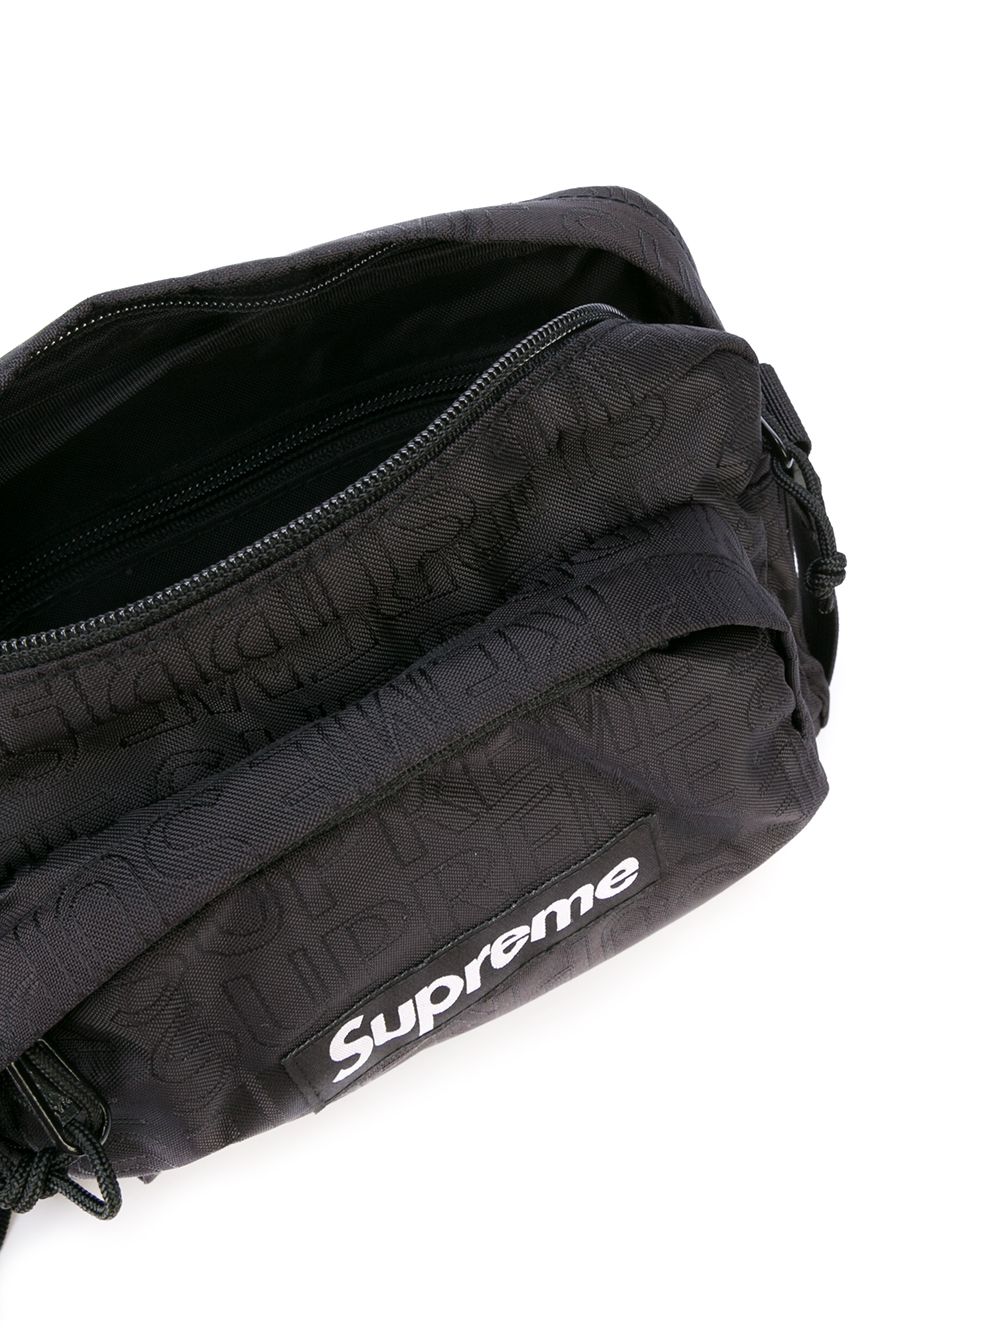 Supreme Logo Print Shoulder Bag - Farfetch